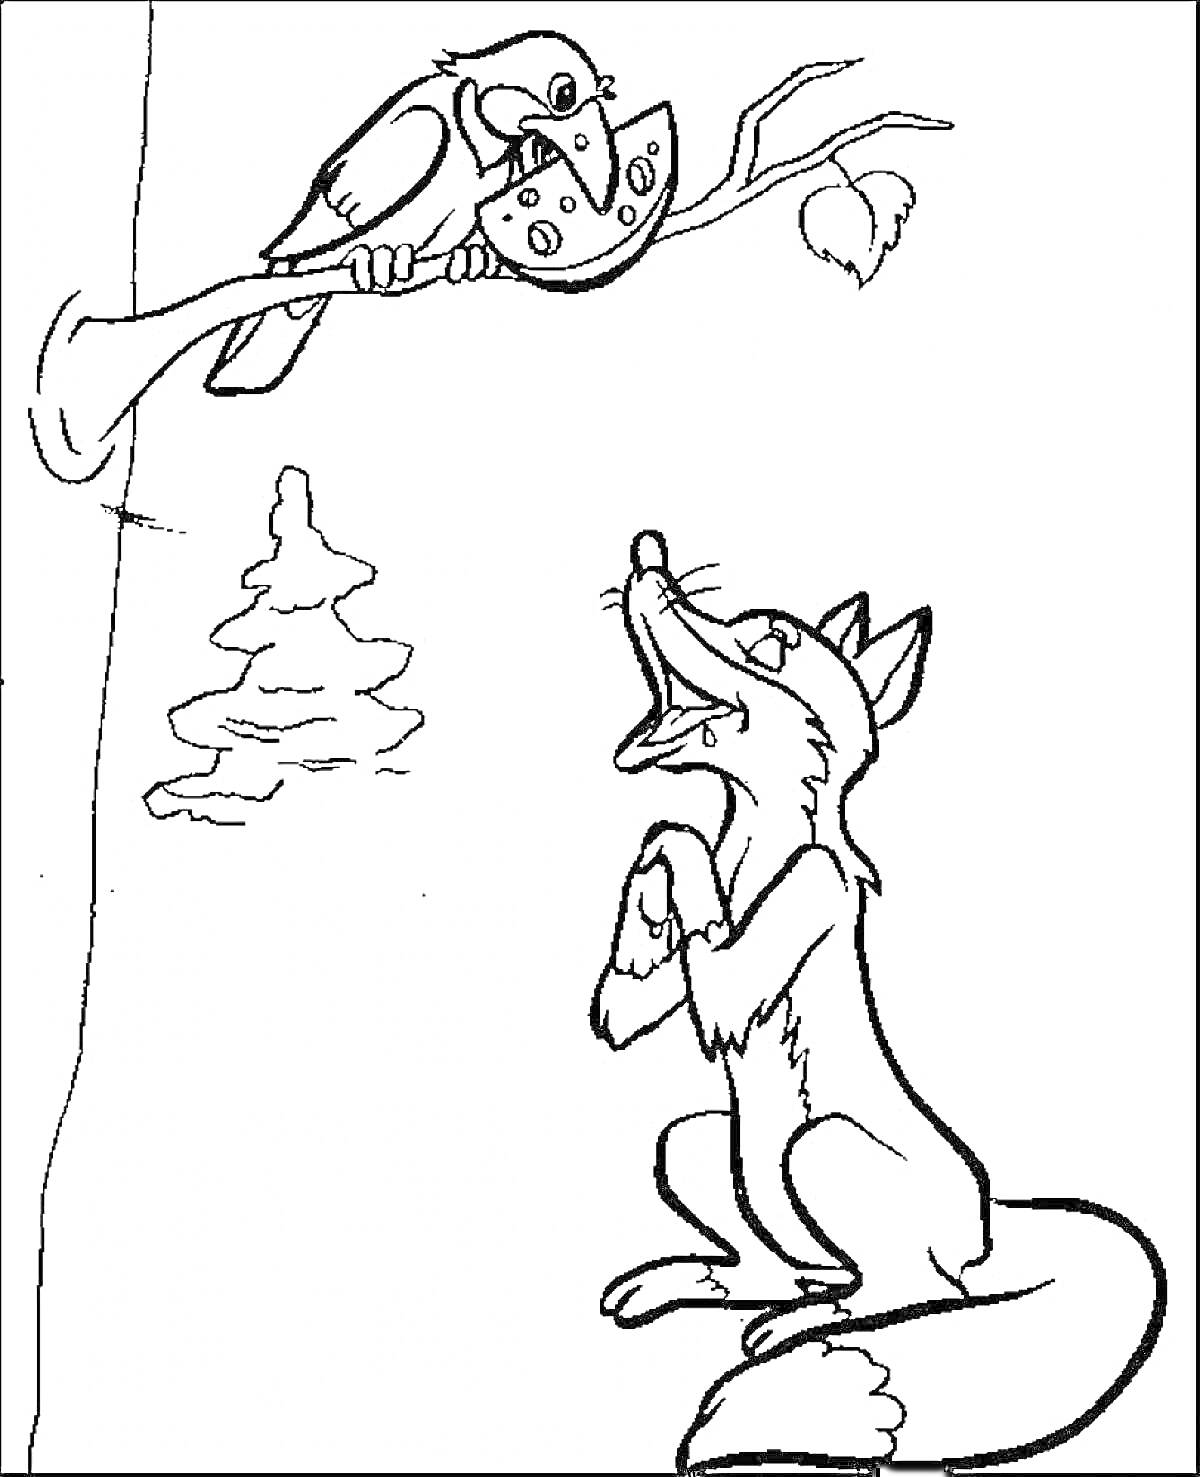 Лисица и Ворона с сыром на дереве, стоящая лиса внизу, ели и дерево с веткой.